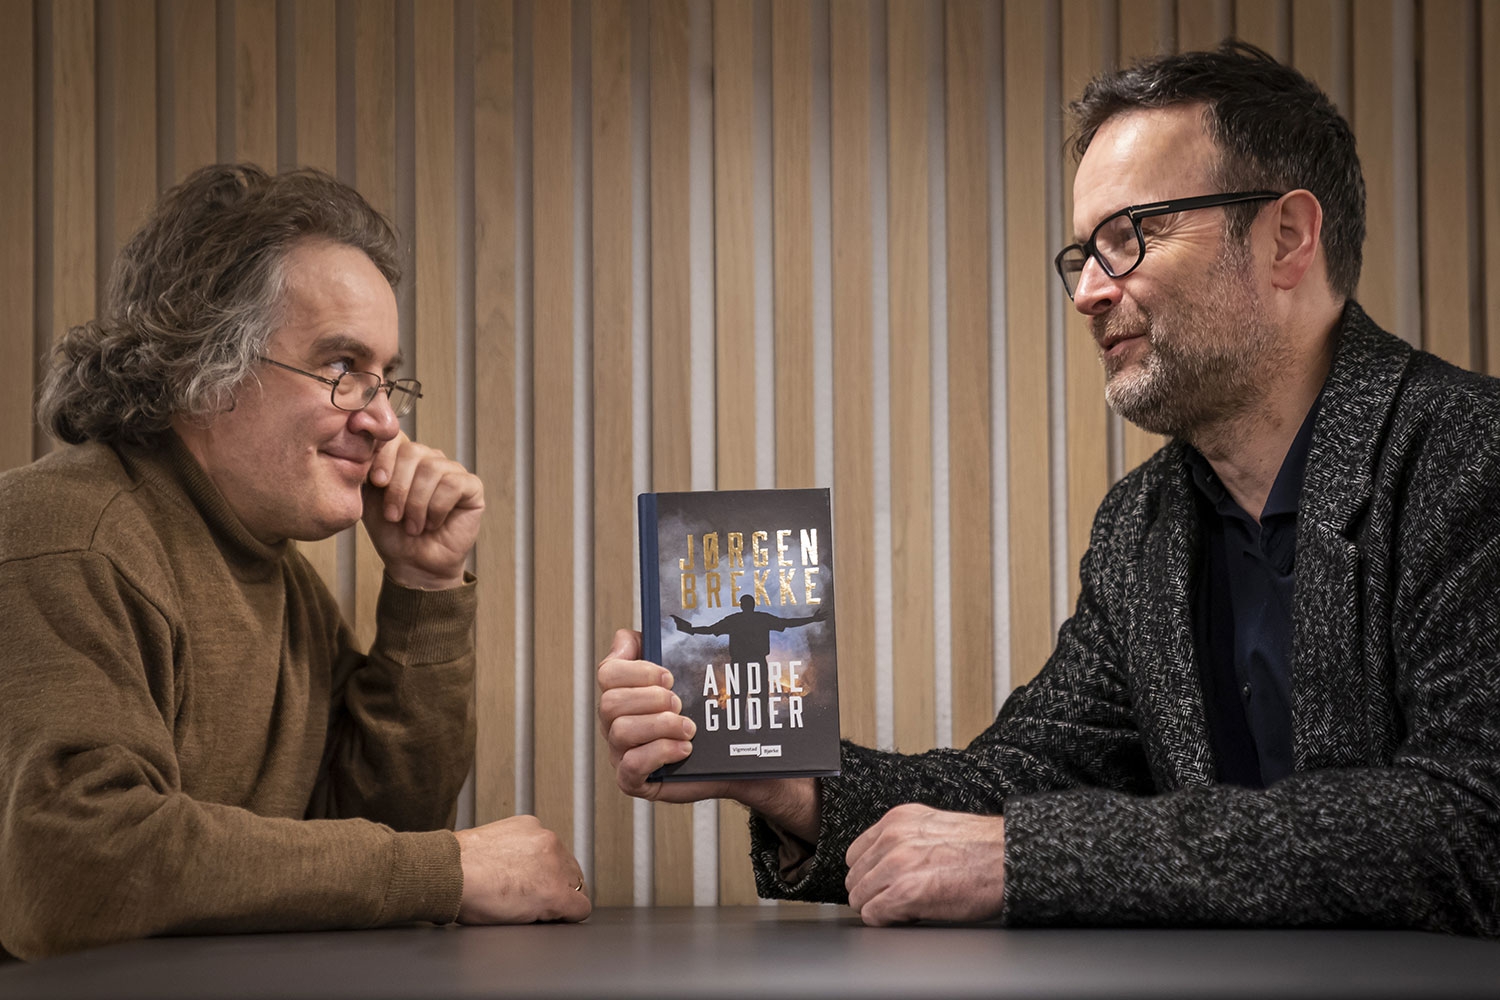 Forfatter Jørgen Brekke og redaktør Marius Aronsen i Vigmostad &amp; Bjørke har stor tro på at kortromanen kan slå an i vår tid, der konkurransen om folks tid og oppmerksomhet er så hard. Brekke er først ut med bok i en serie som tar for seg et av de 10 bud: «Andre guder».